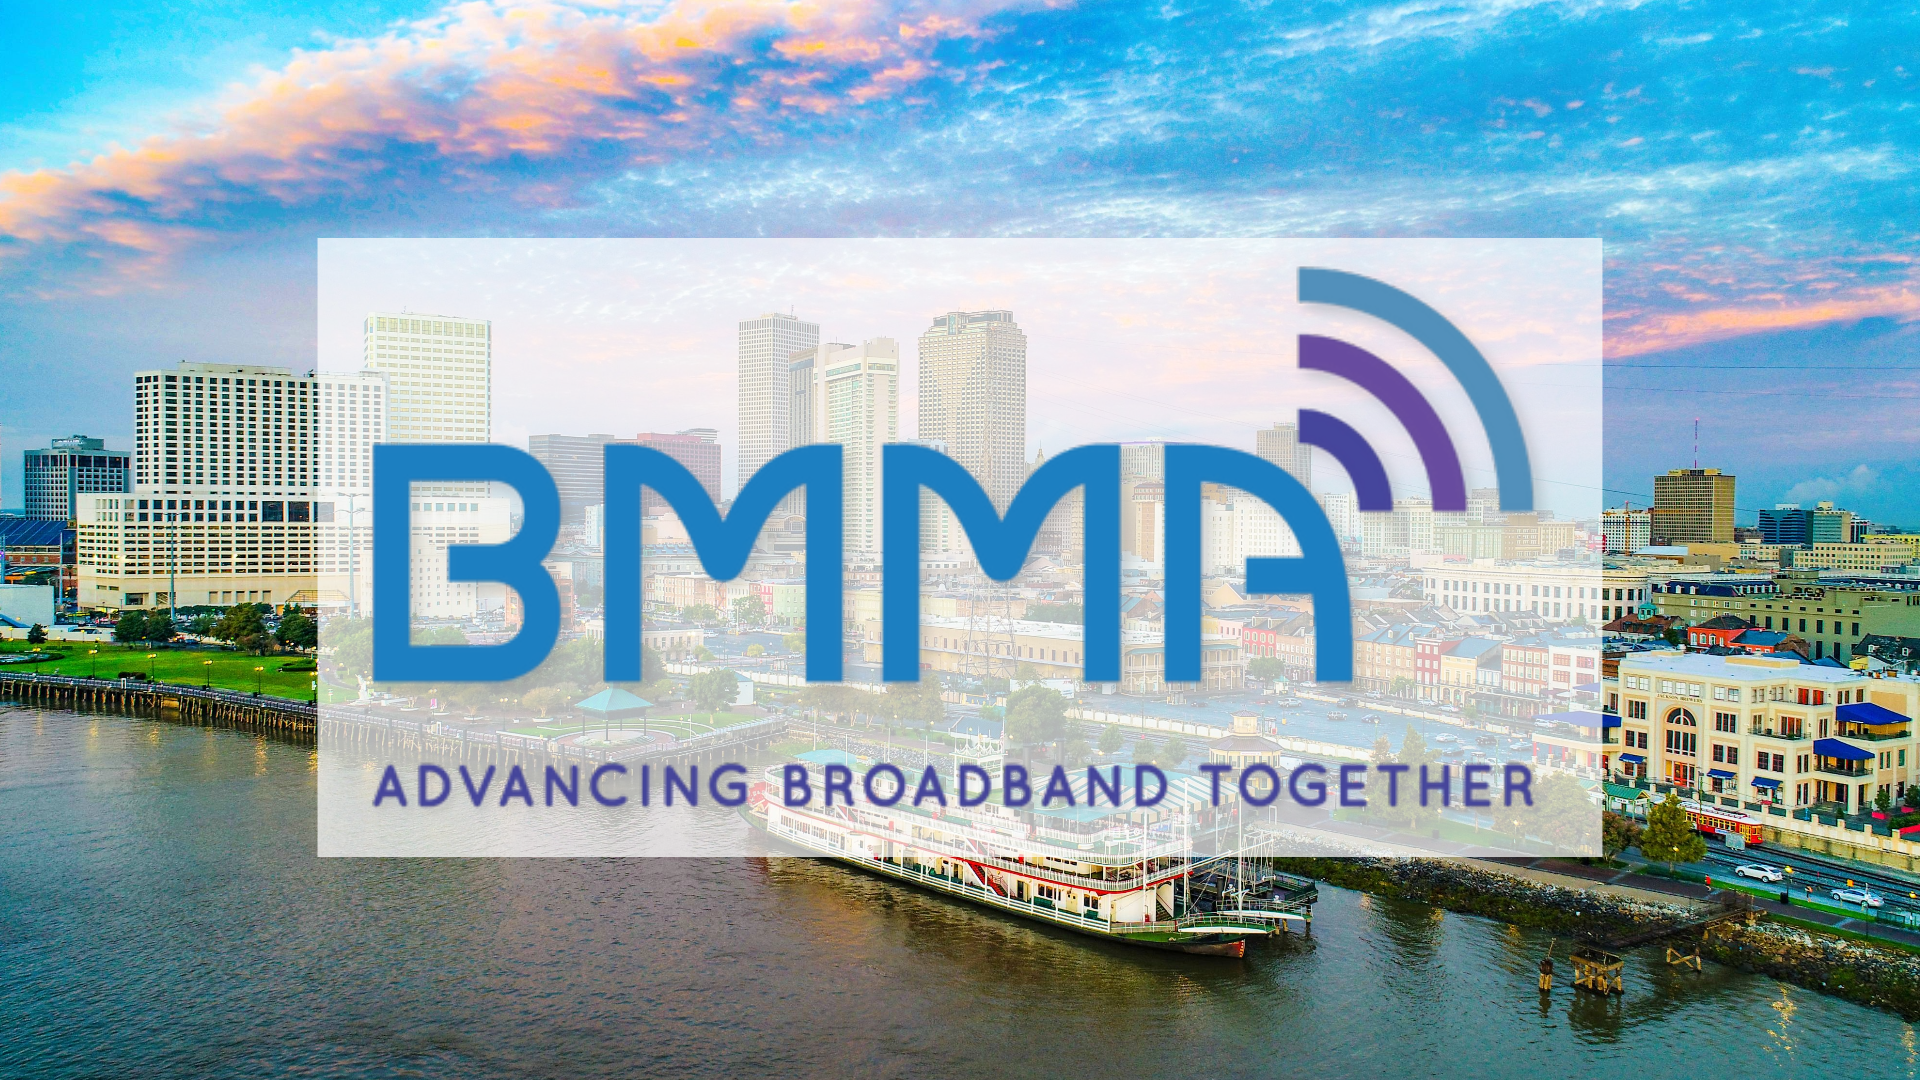 Broadband Multimedia Marketing Assoc. (BMMA) Fall Workshop, New Orleans, LA